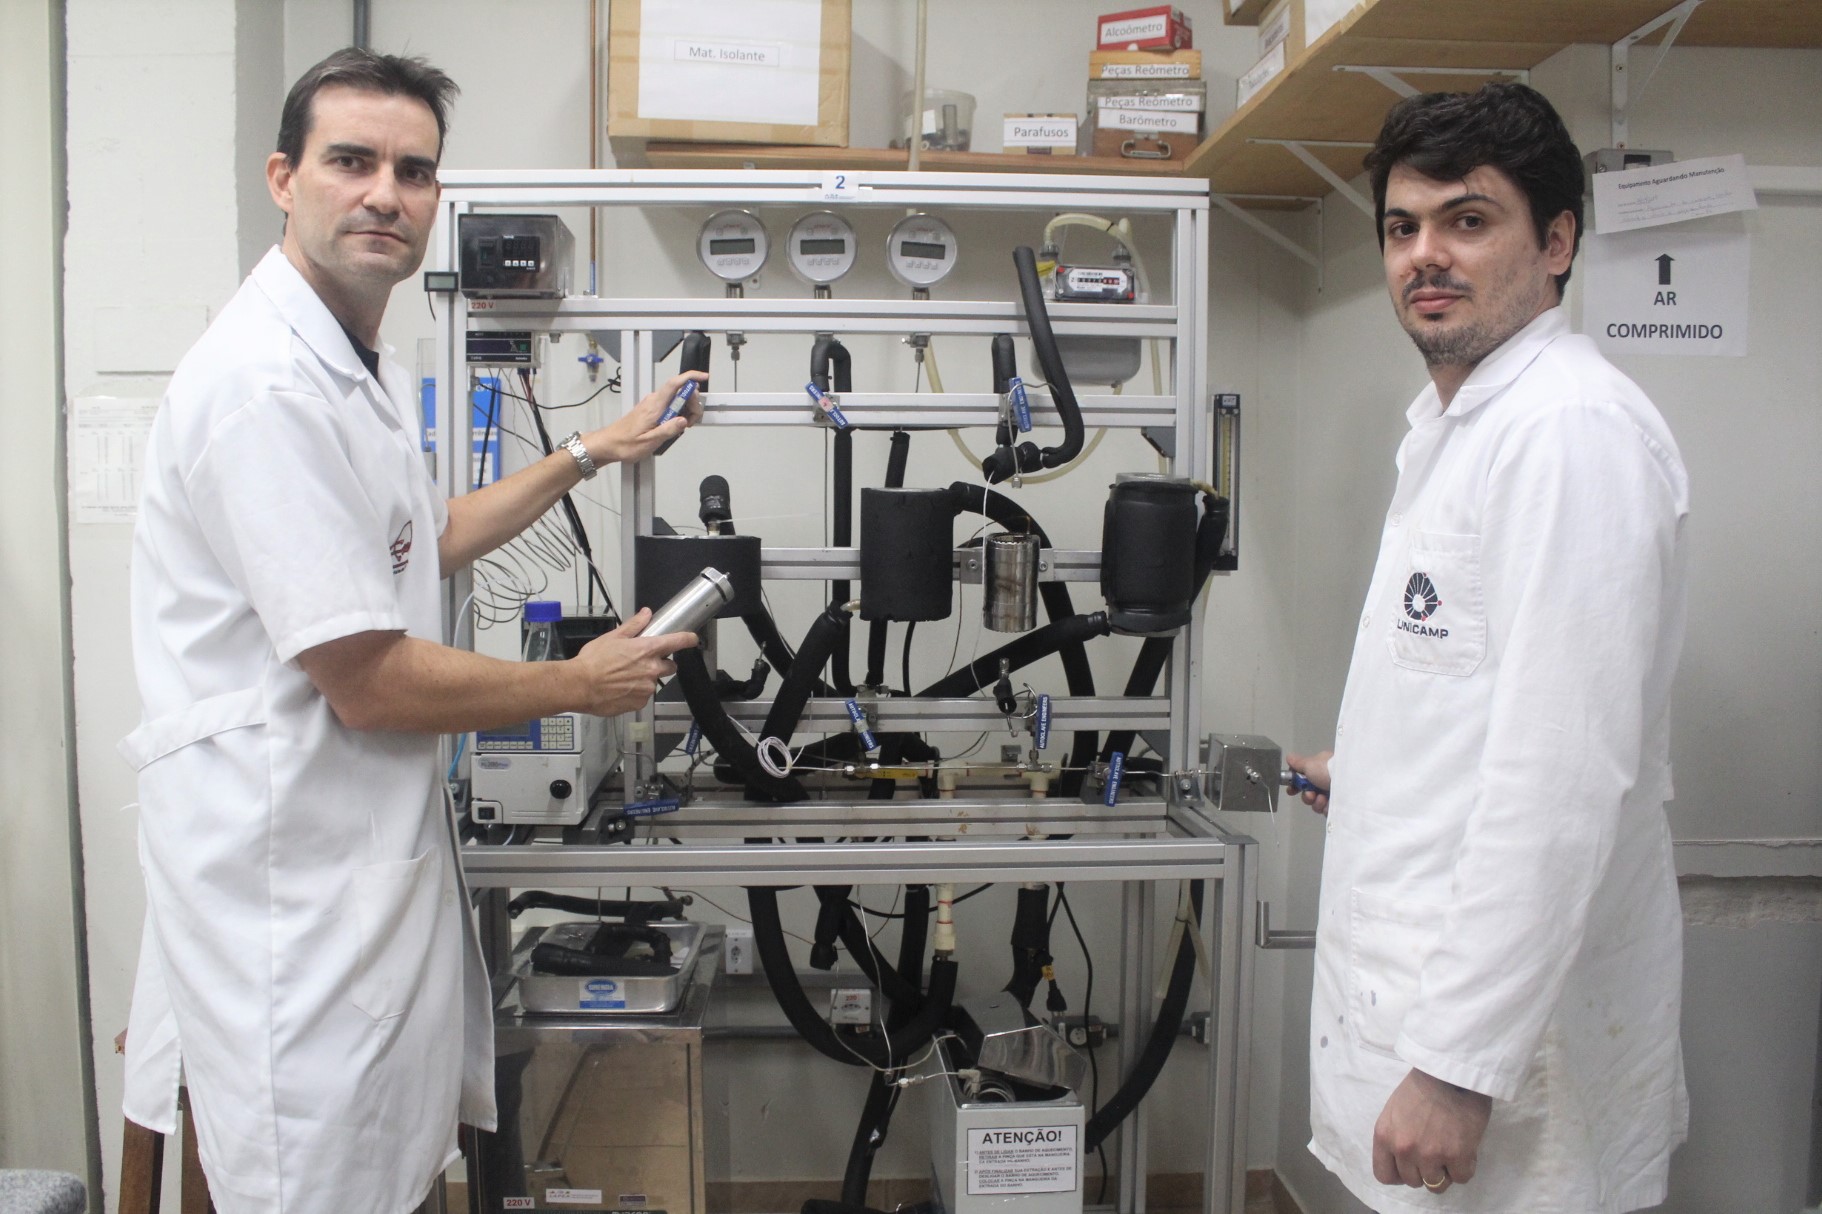 Dois homens, pesquisadores da Unicamp, vestindo jaleco branco, aparecem em frente ao equipamento usado na produção de aromas naturais de frutas. A máquina tem estrutura metálica, da altura dos cientistas, além de tubos pretos e mostradores digitais.